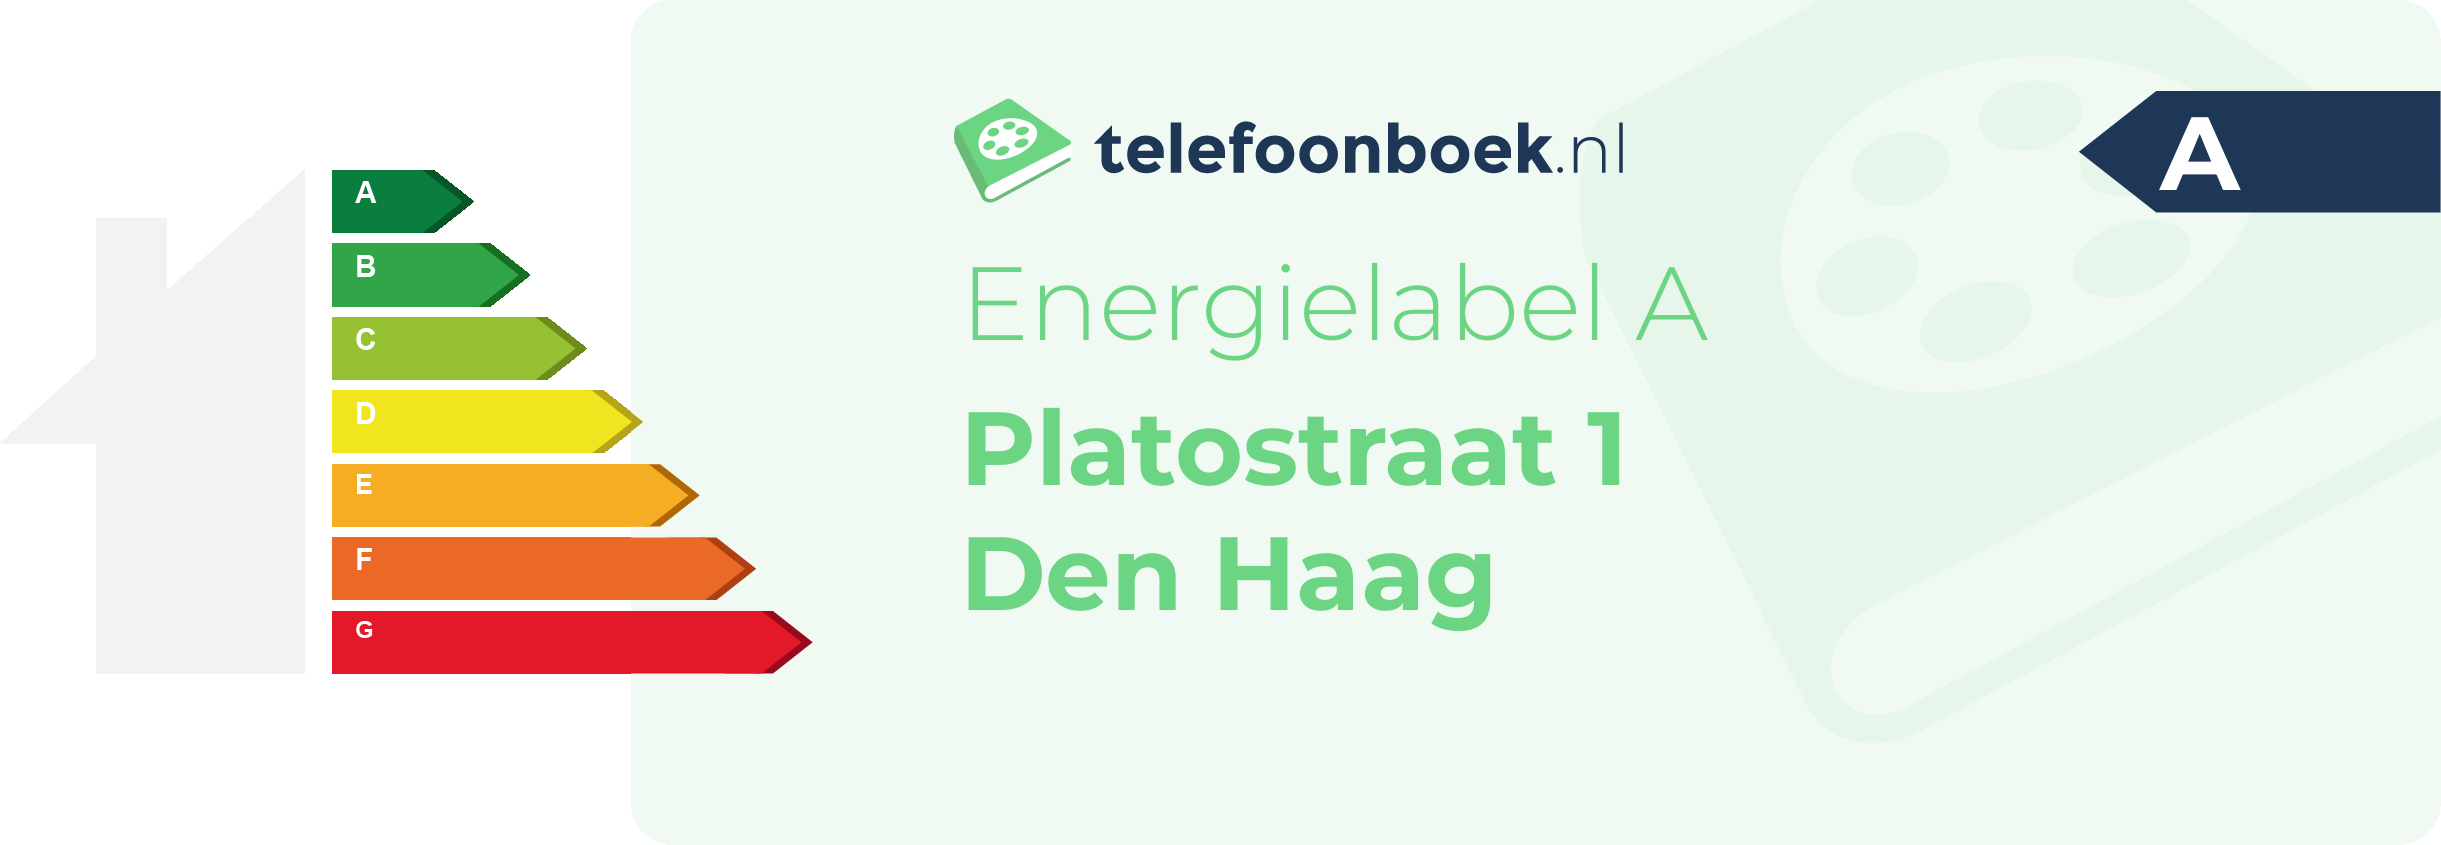 Energielabel Platostraat 1 Den Haag